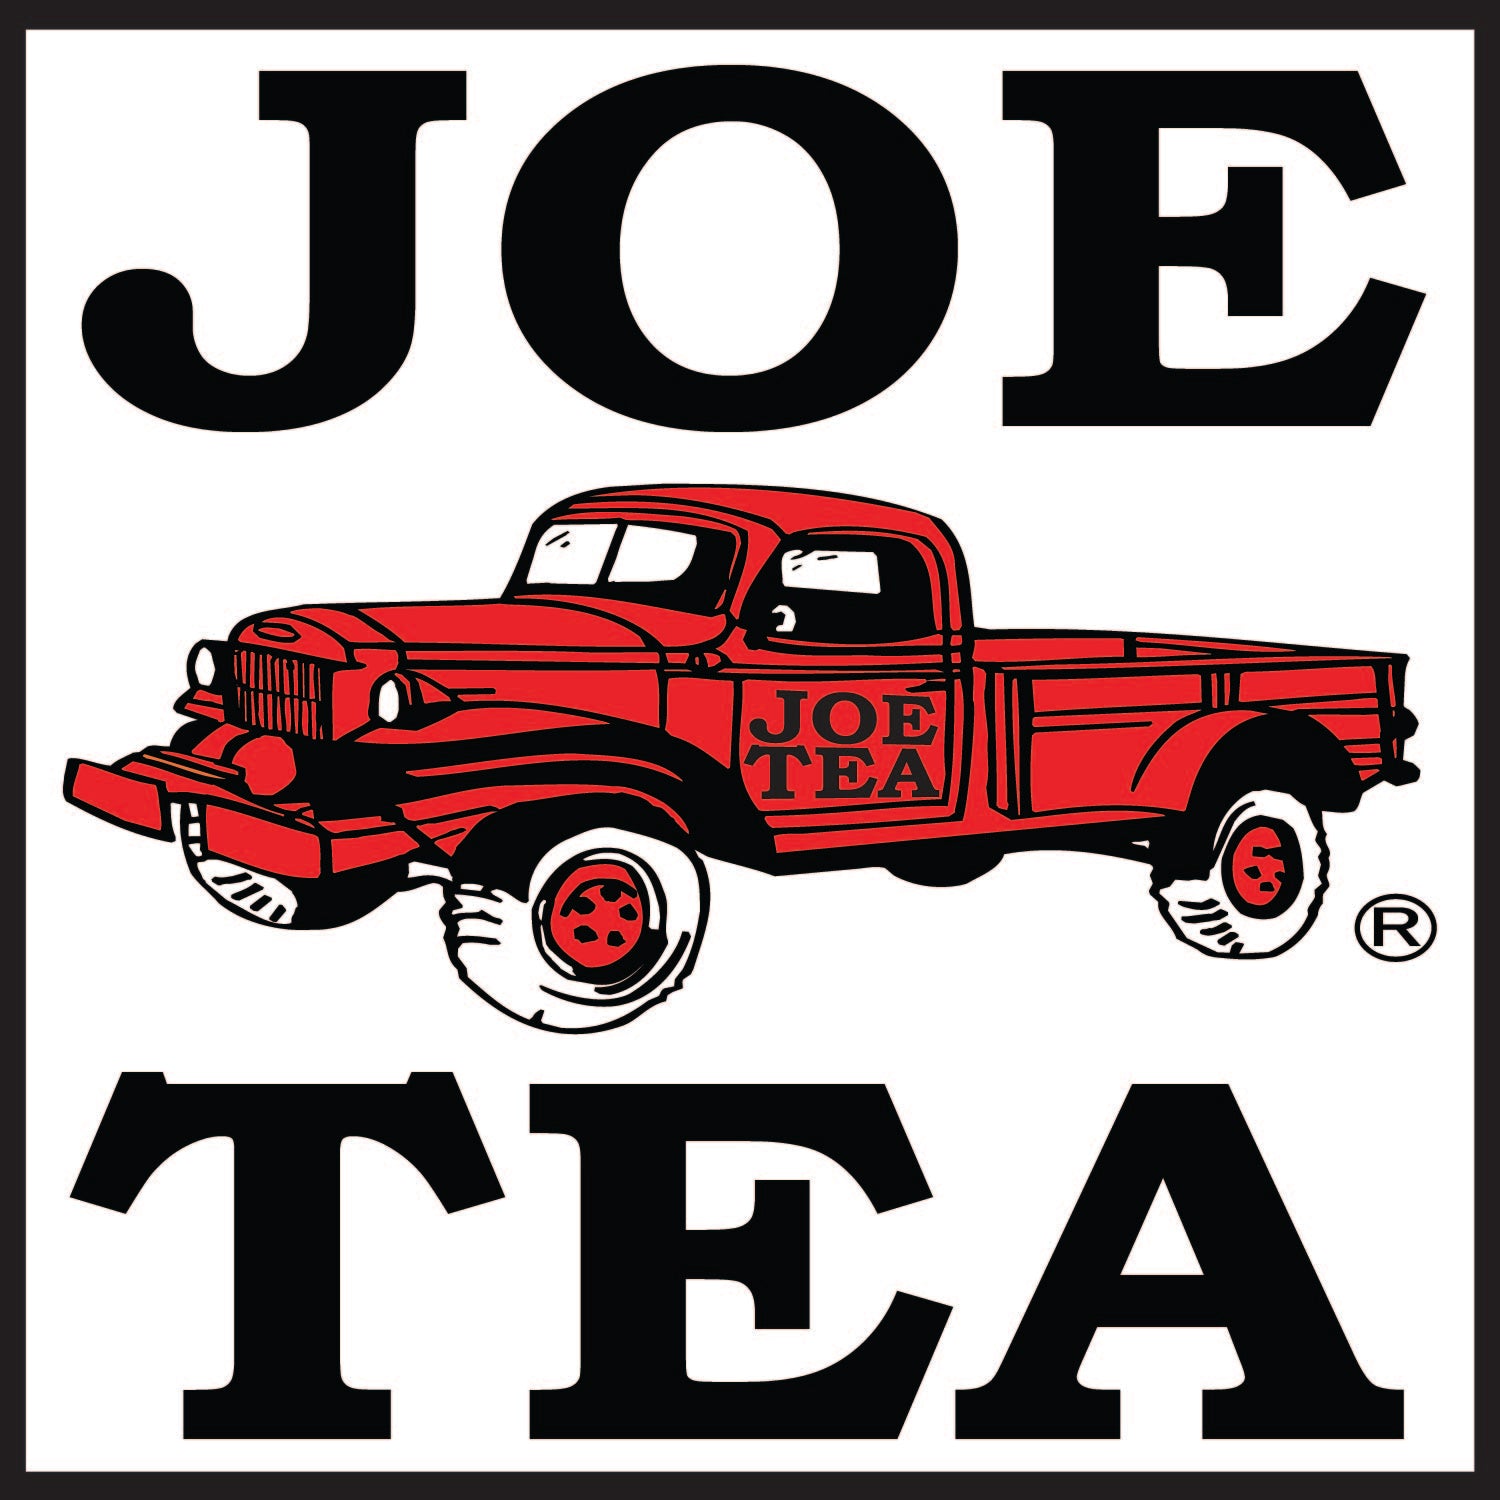 JOE TEA